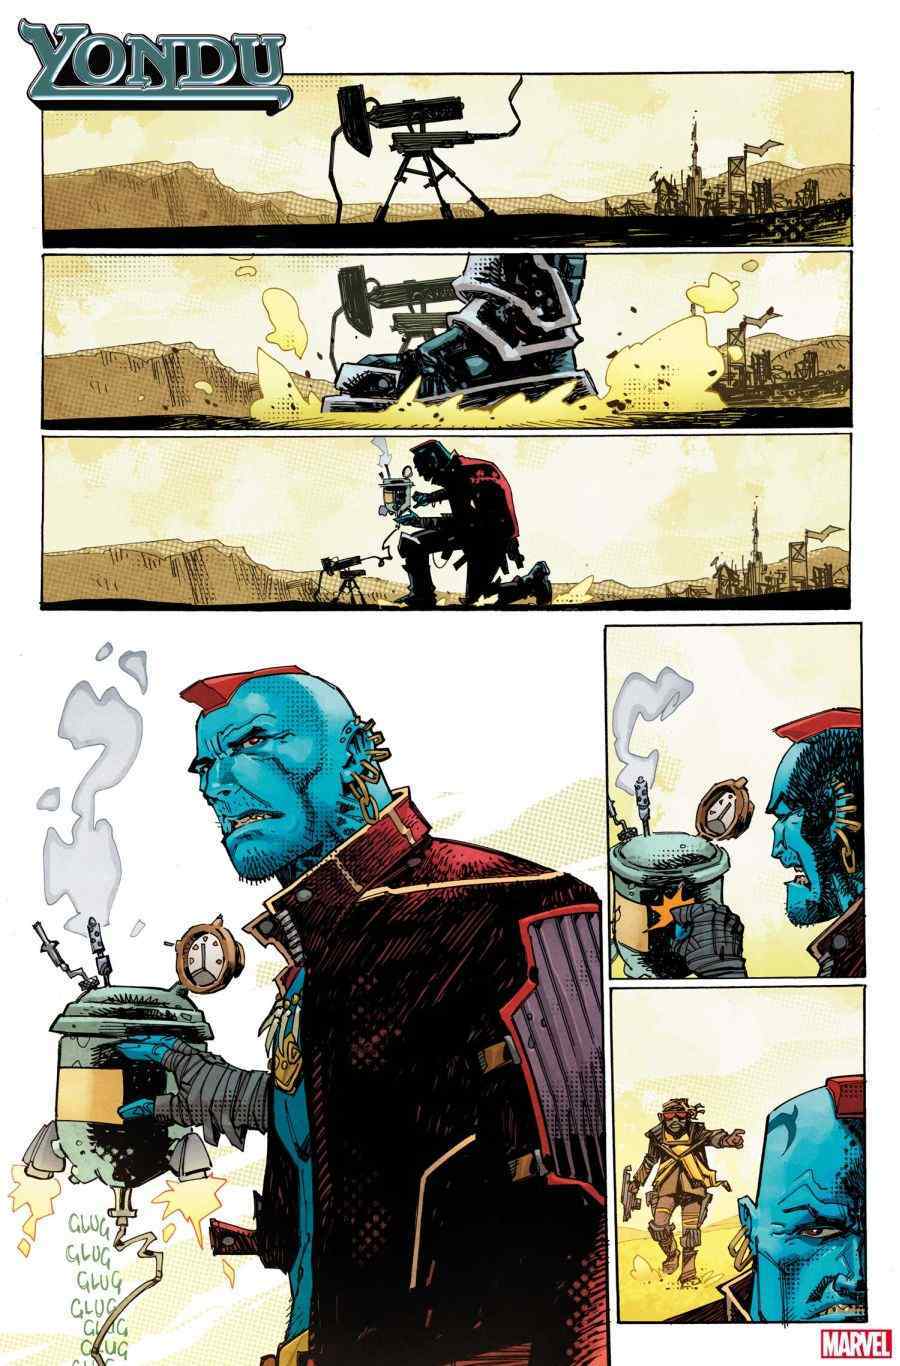 Marvel: Yondu el devastador tendrá su propio cómic este año